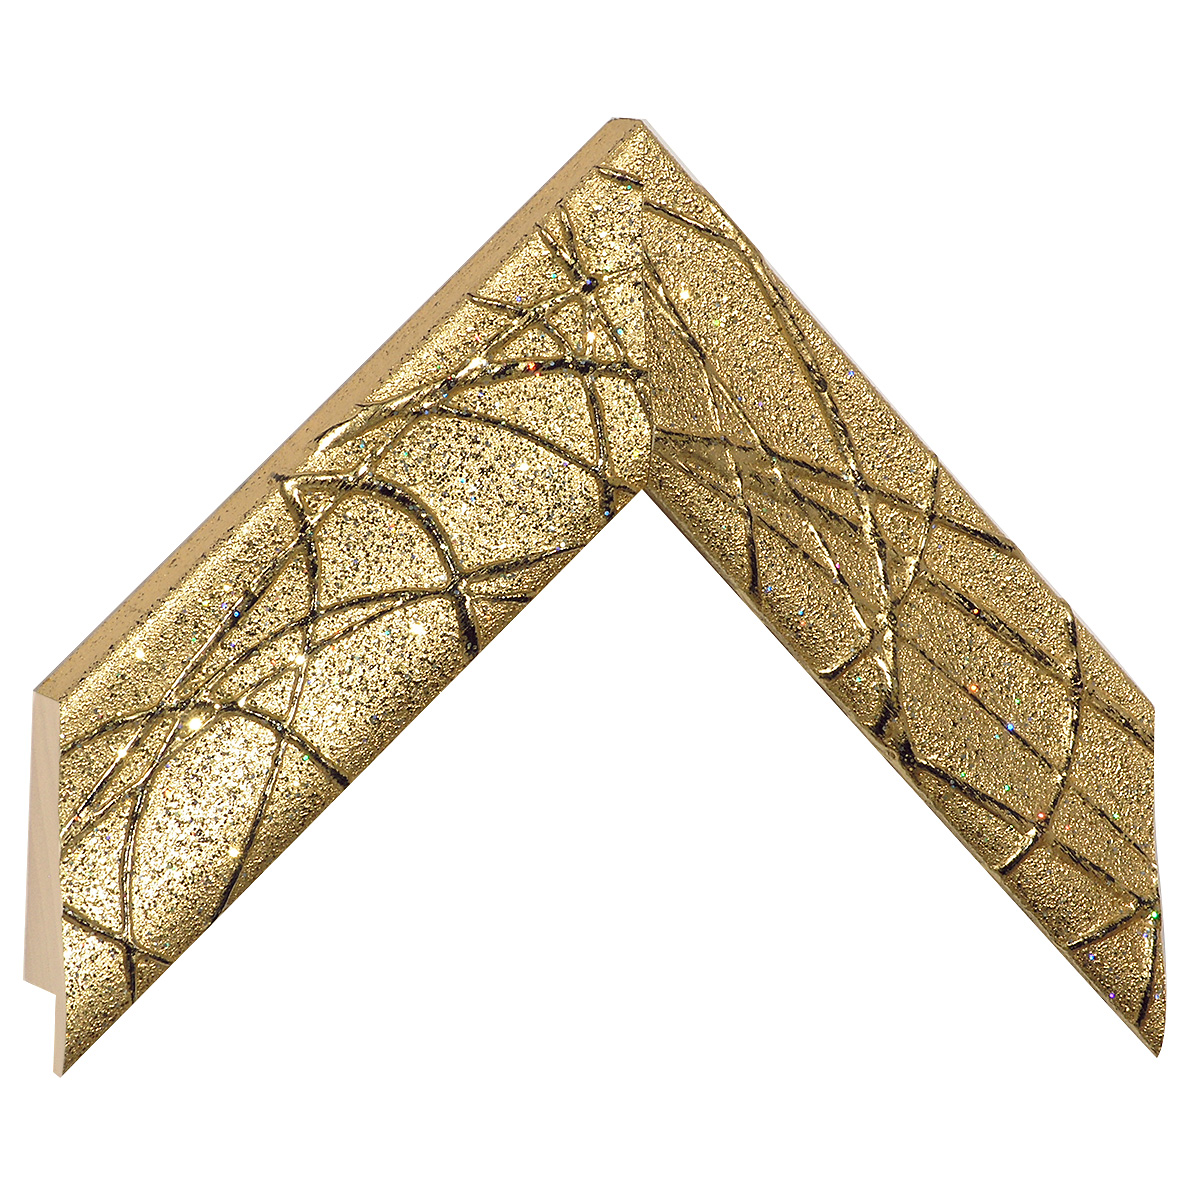 Profil ayous Lăț.47 mm Înălț.30 - auriu, decorațiuni în relief - Mostră